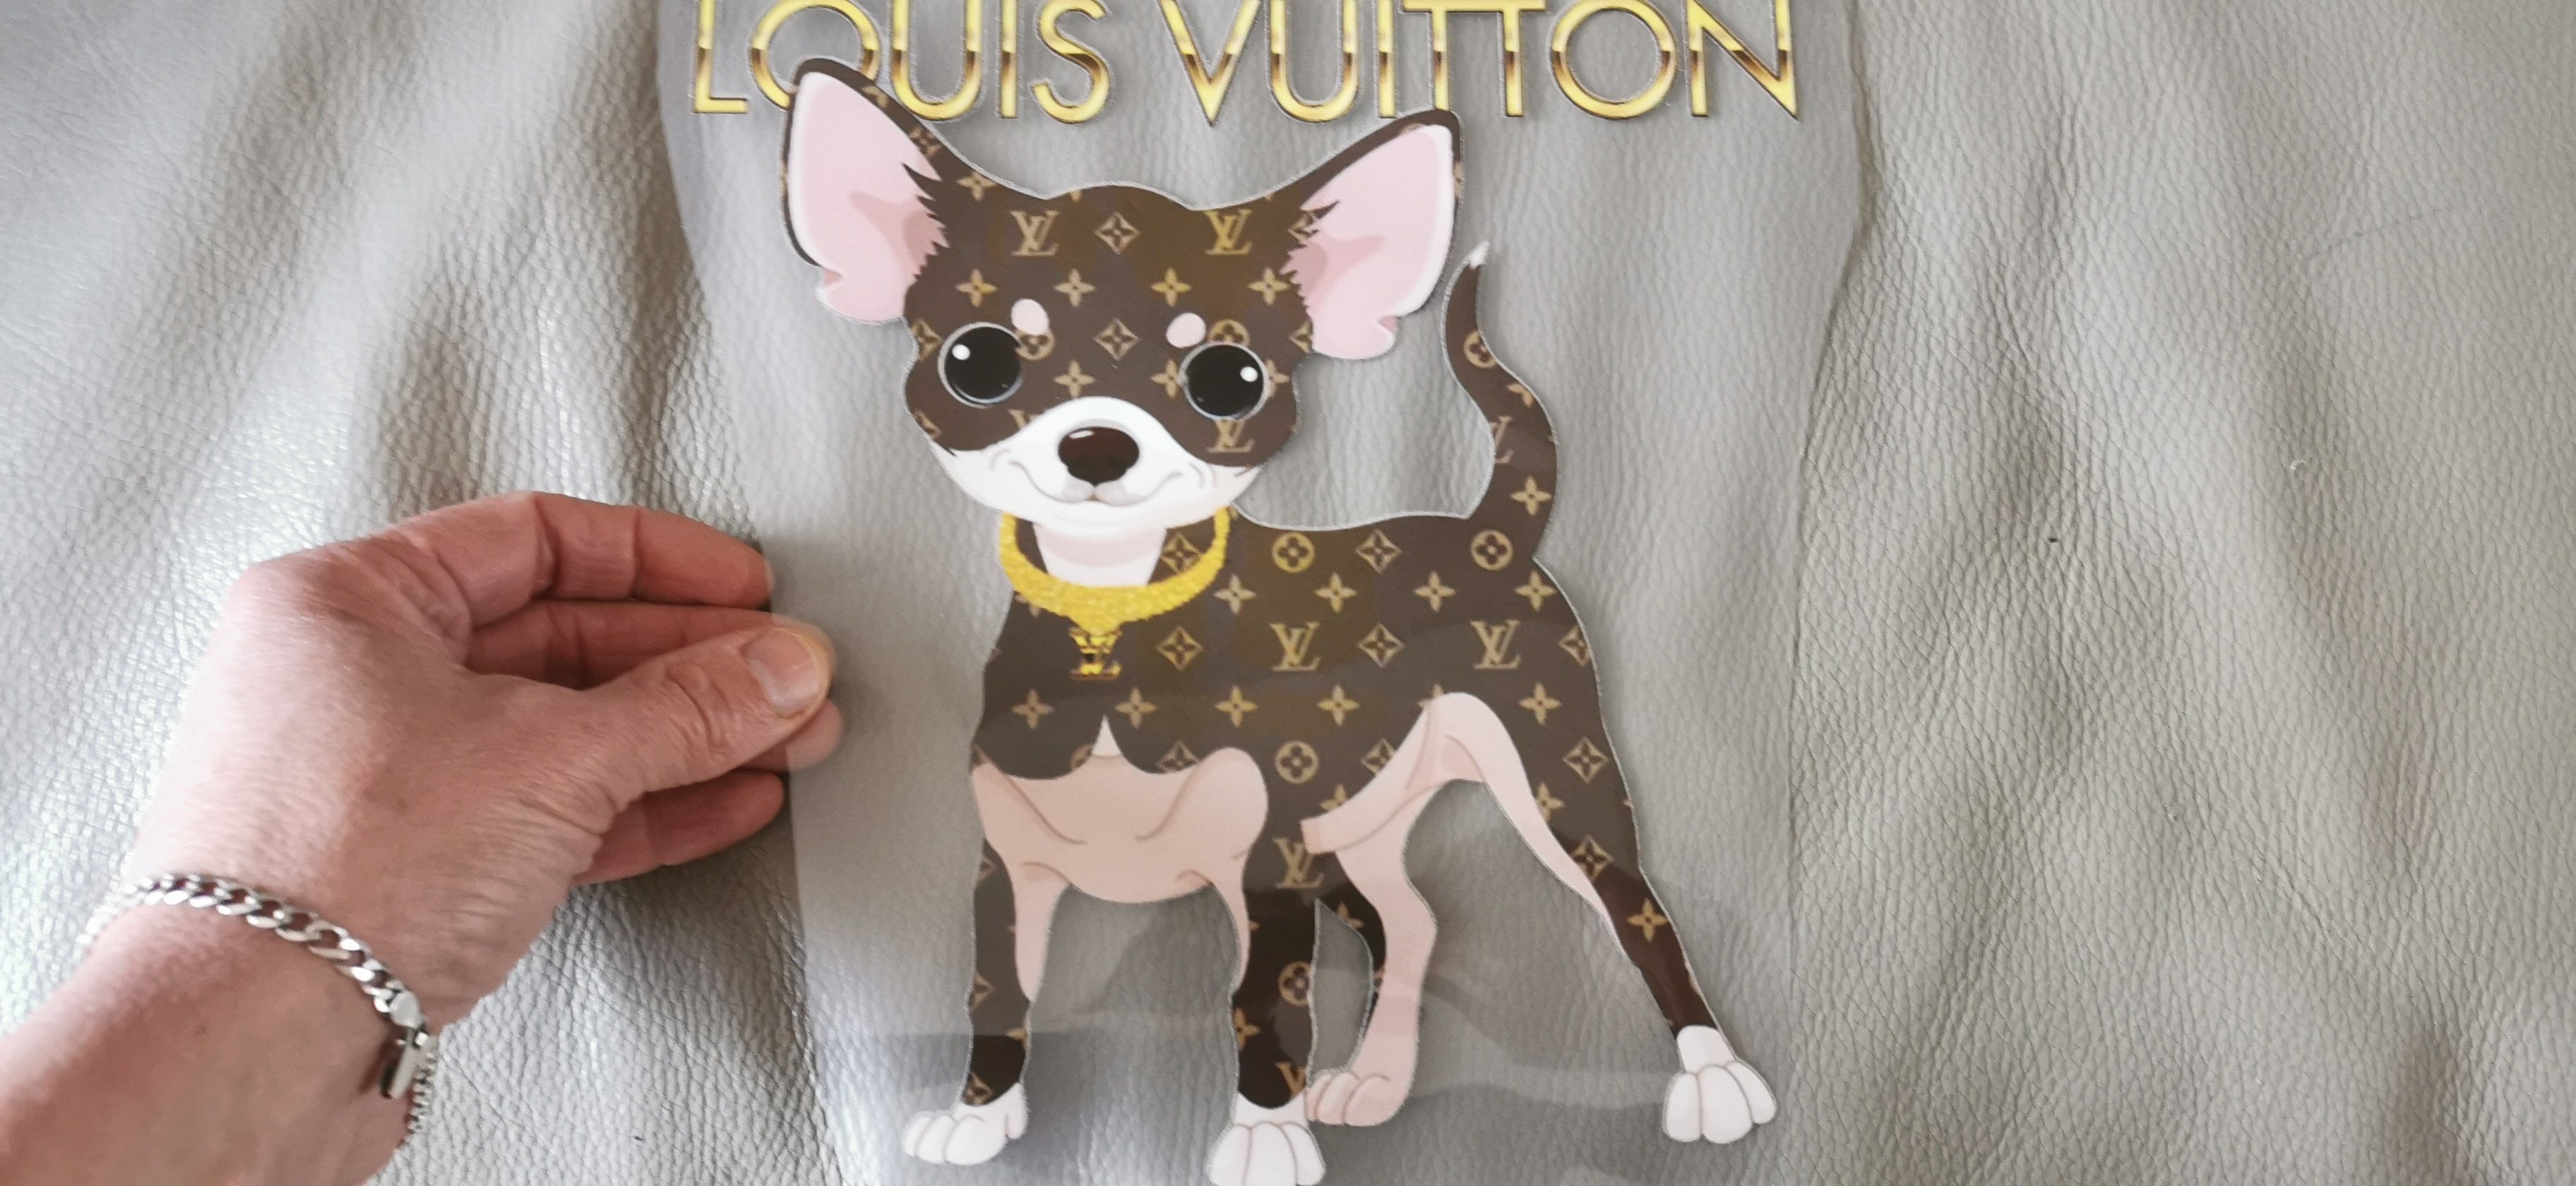 The Louis Vuitton Dog - TGIF 🎉🎉🎉🎉🤩🤗🤪🥳 #thelouisvuittondog